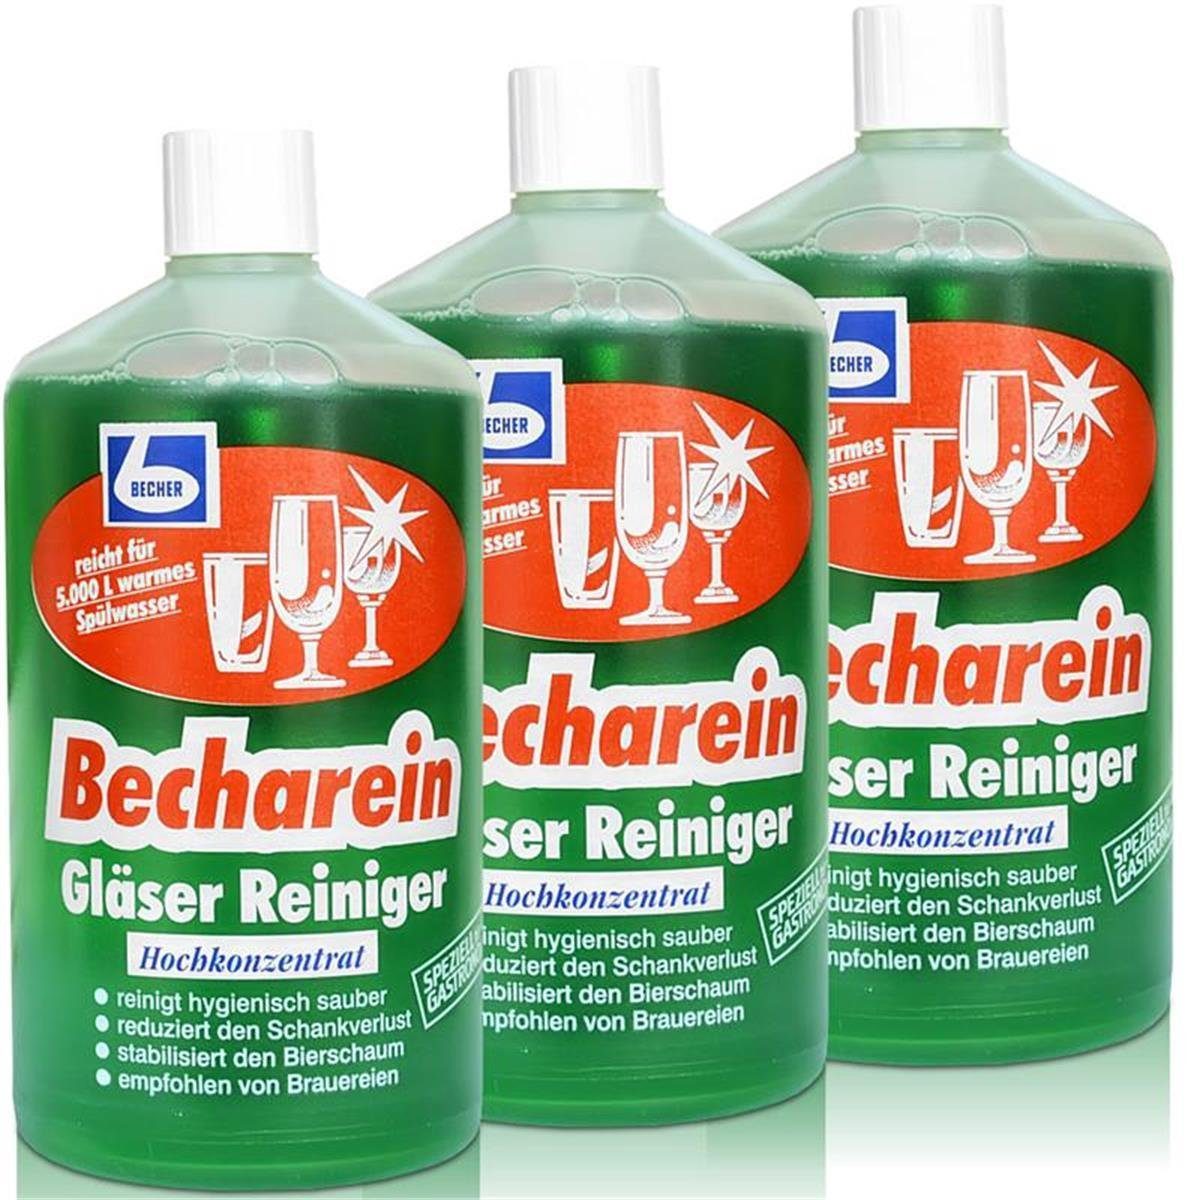 Becher Gläser Dr. Becher Dr. Becharein 1 / Liter Hochkonzentrat 3x Reiniger Glasreiniger